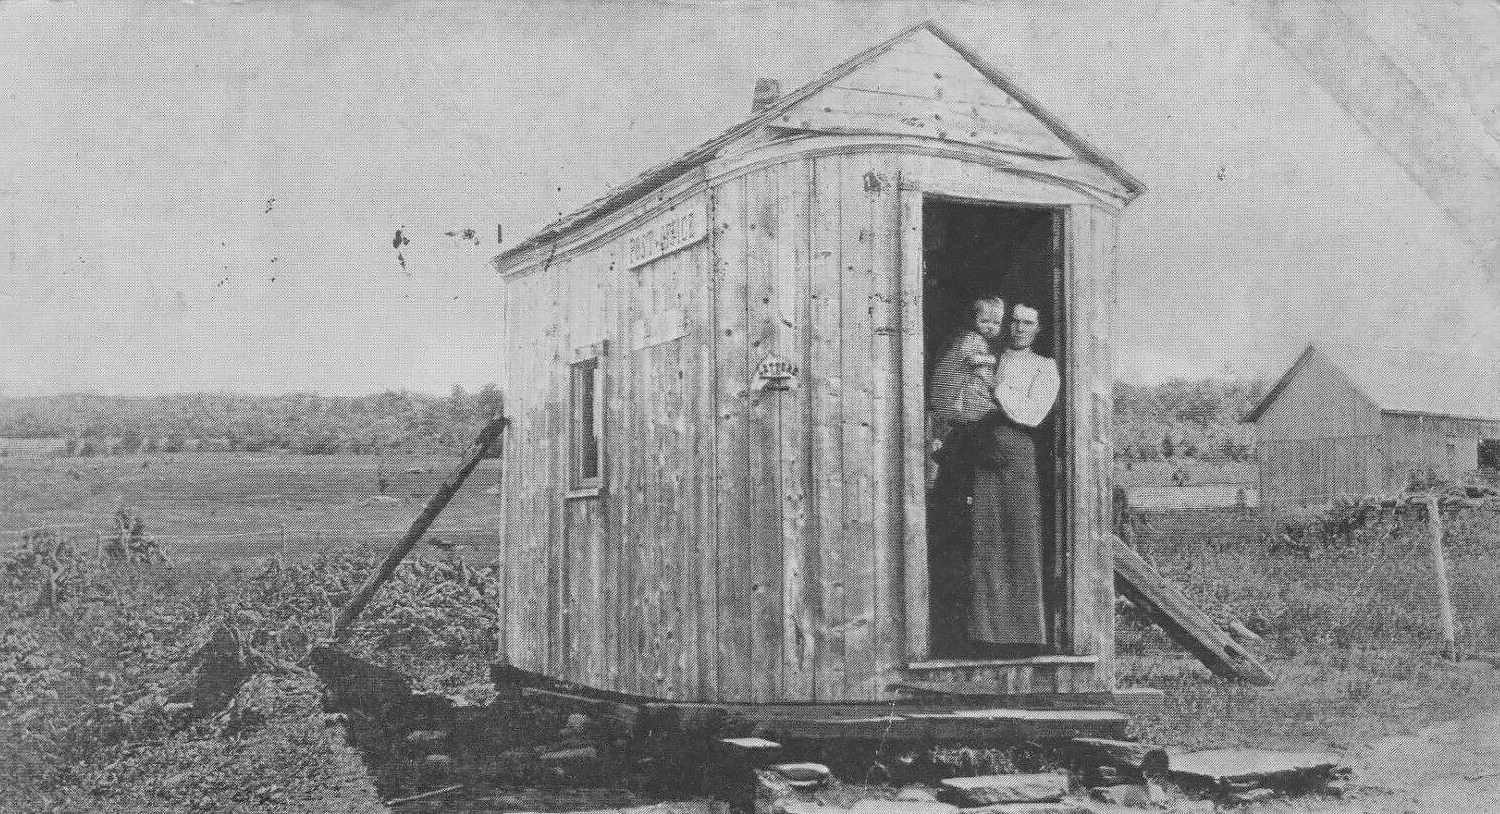 Post Office - Cooley NY - Sullivan County c1905